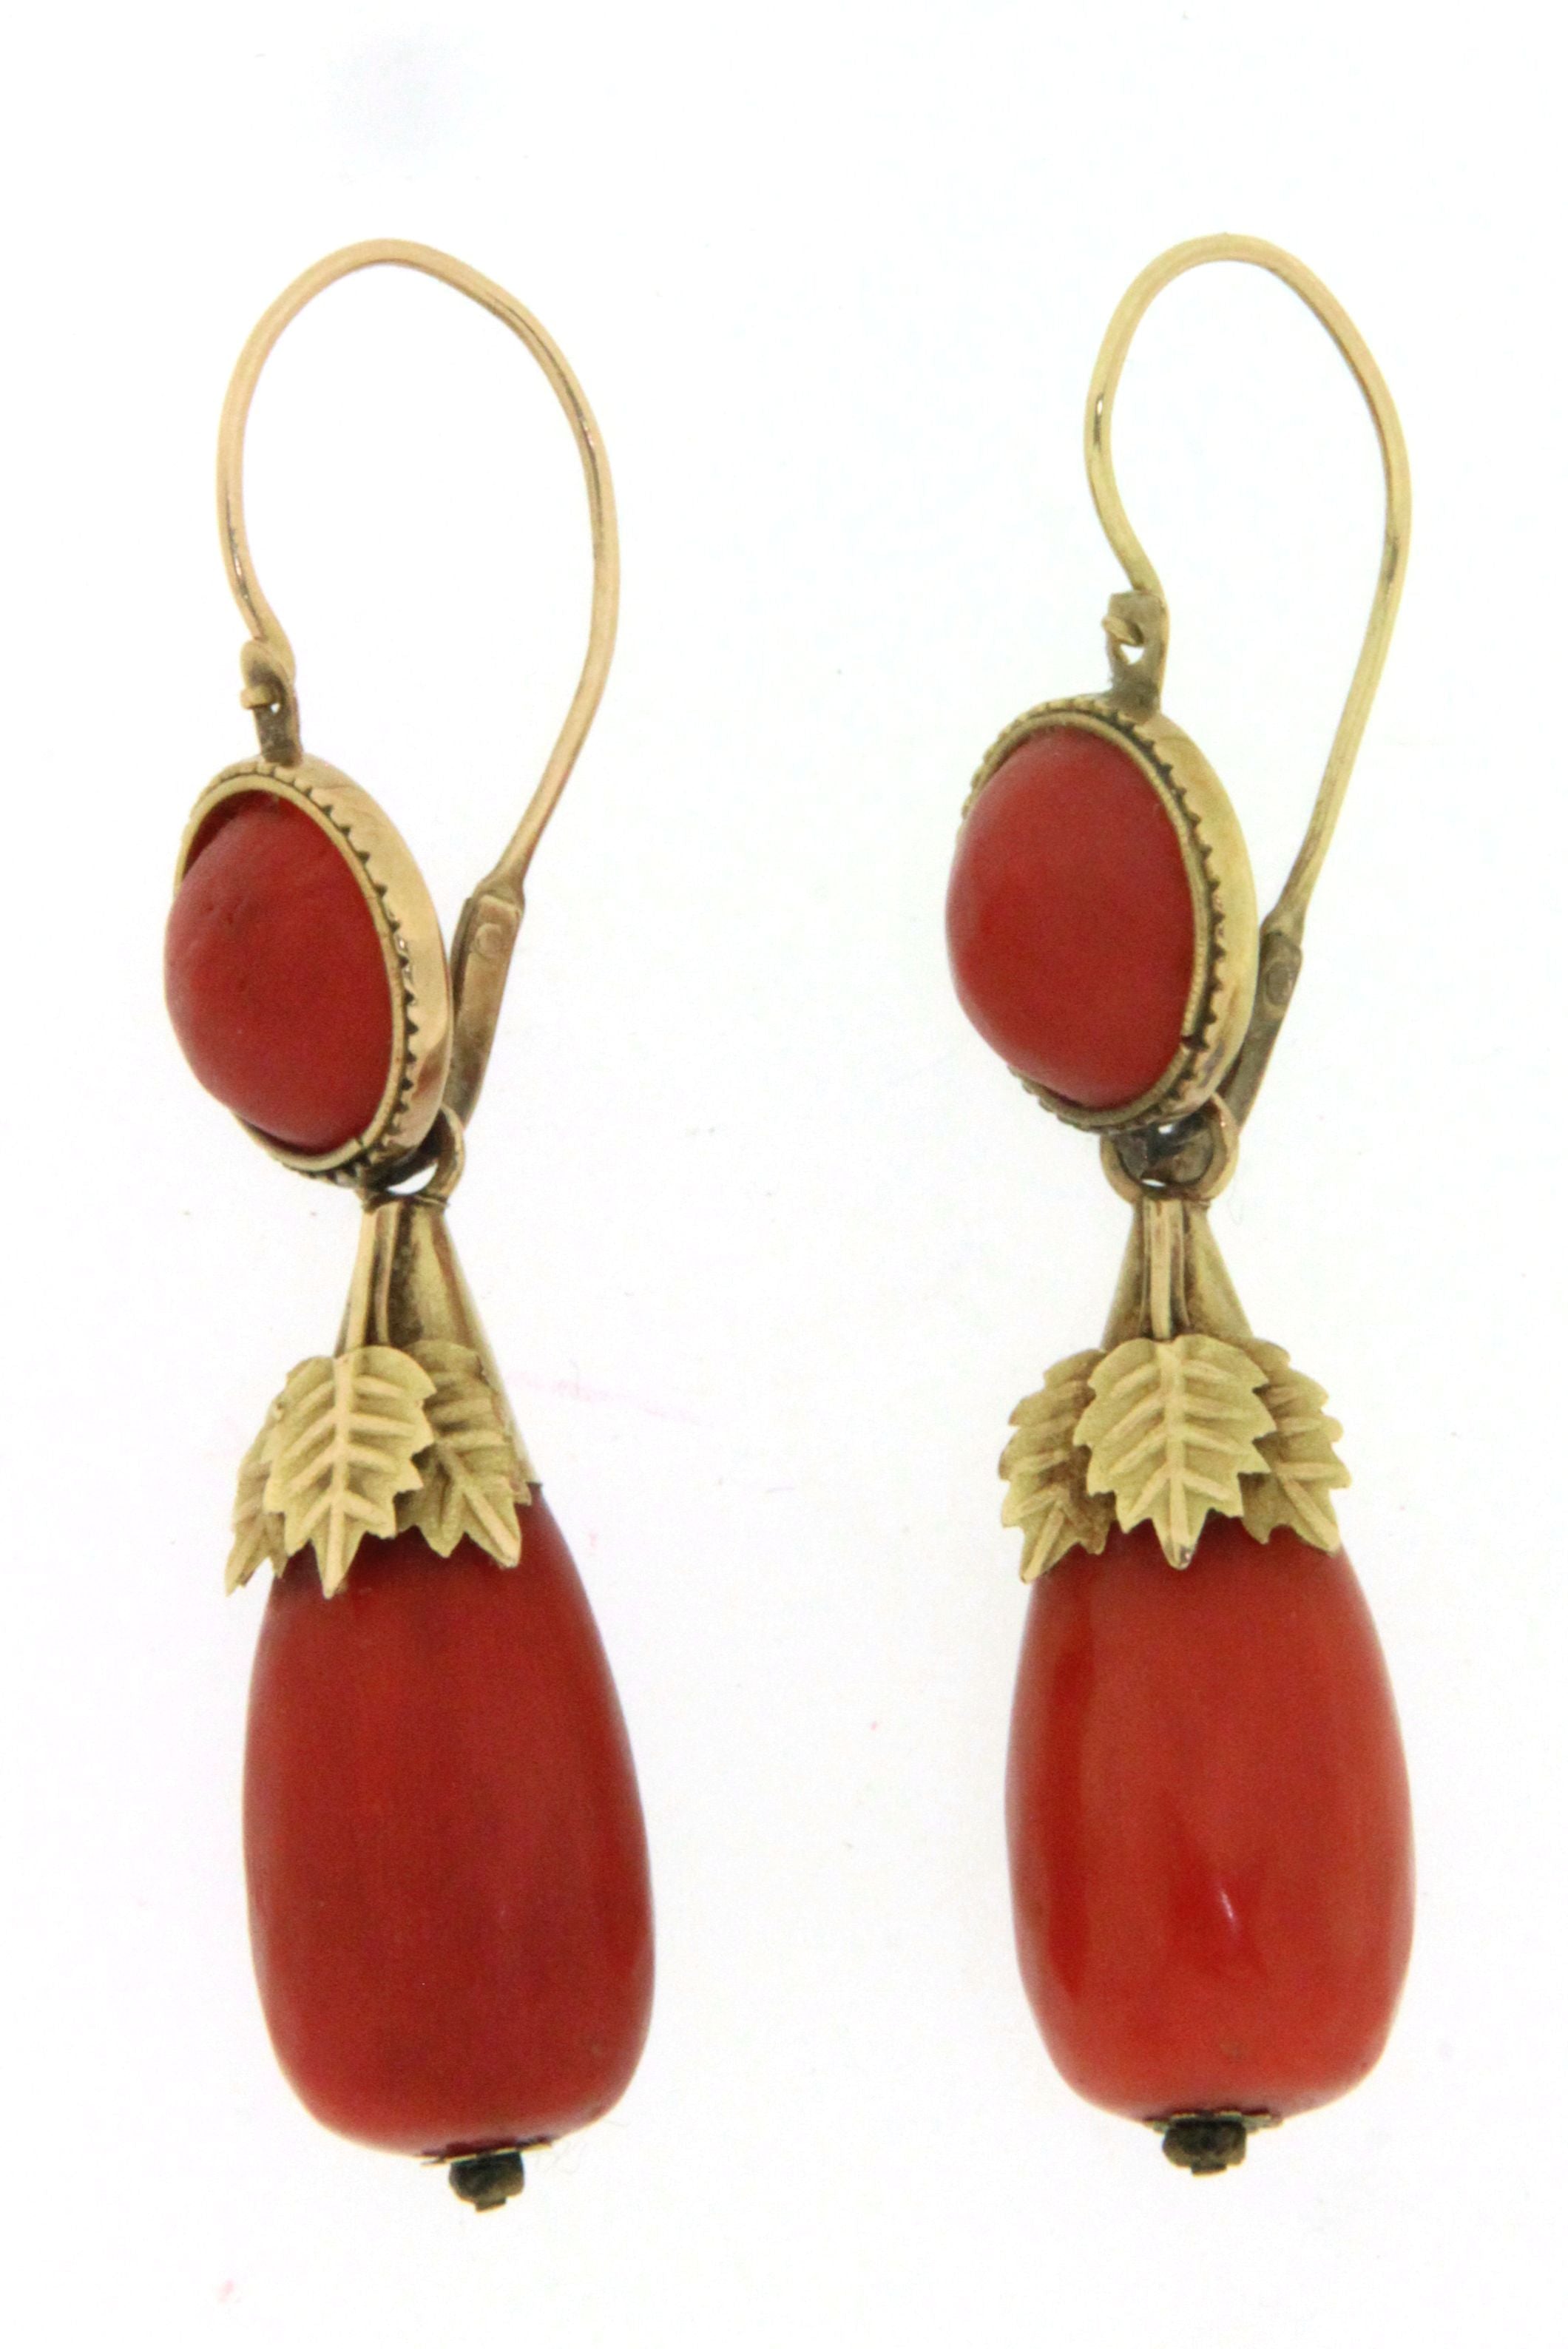 Paio di orecchini in oro 18 kt con corallo, in stile antico. (110)